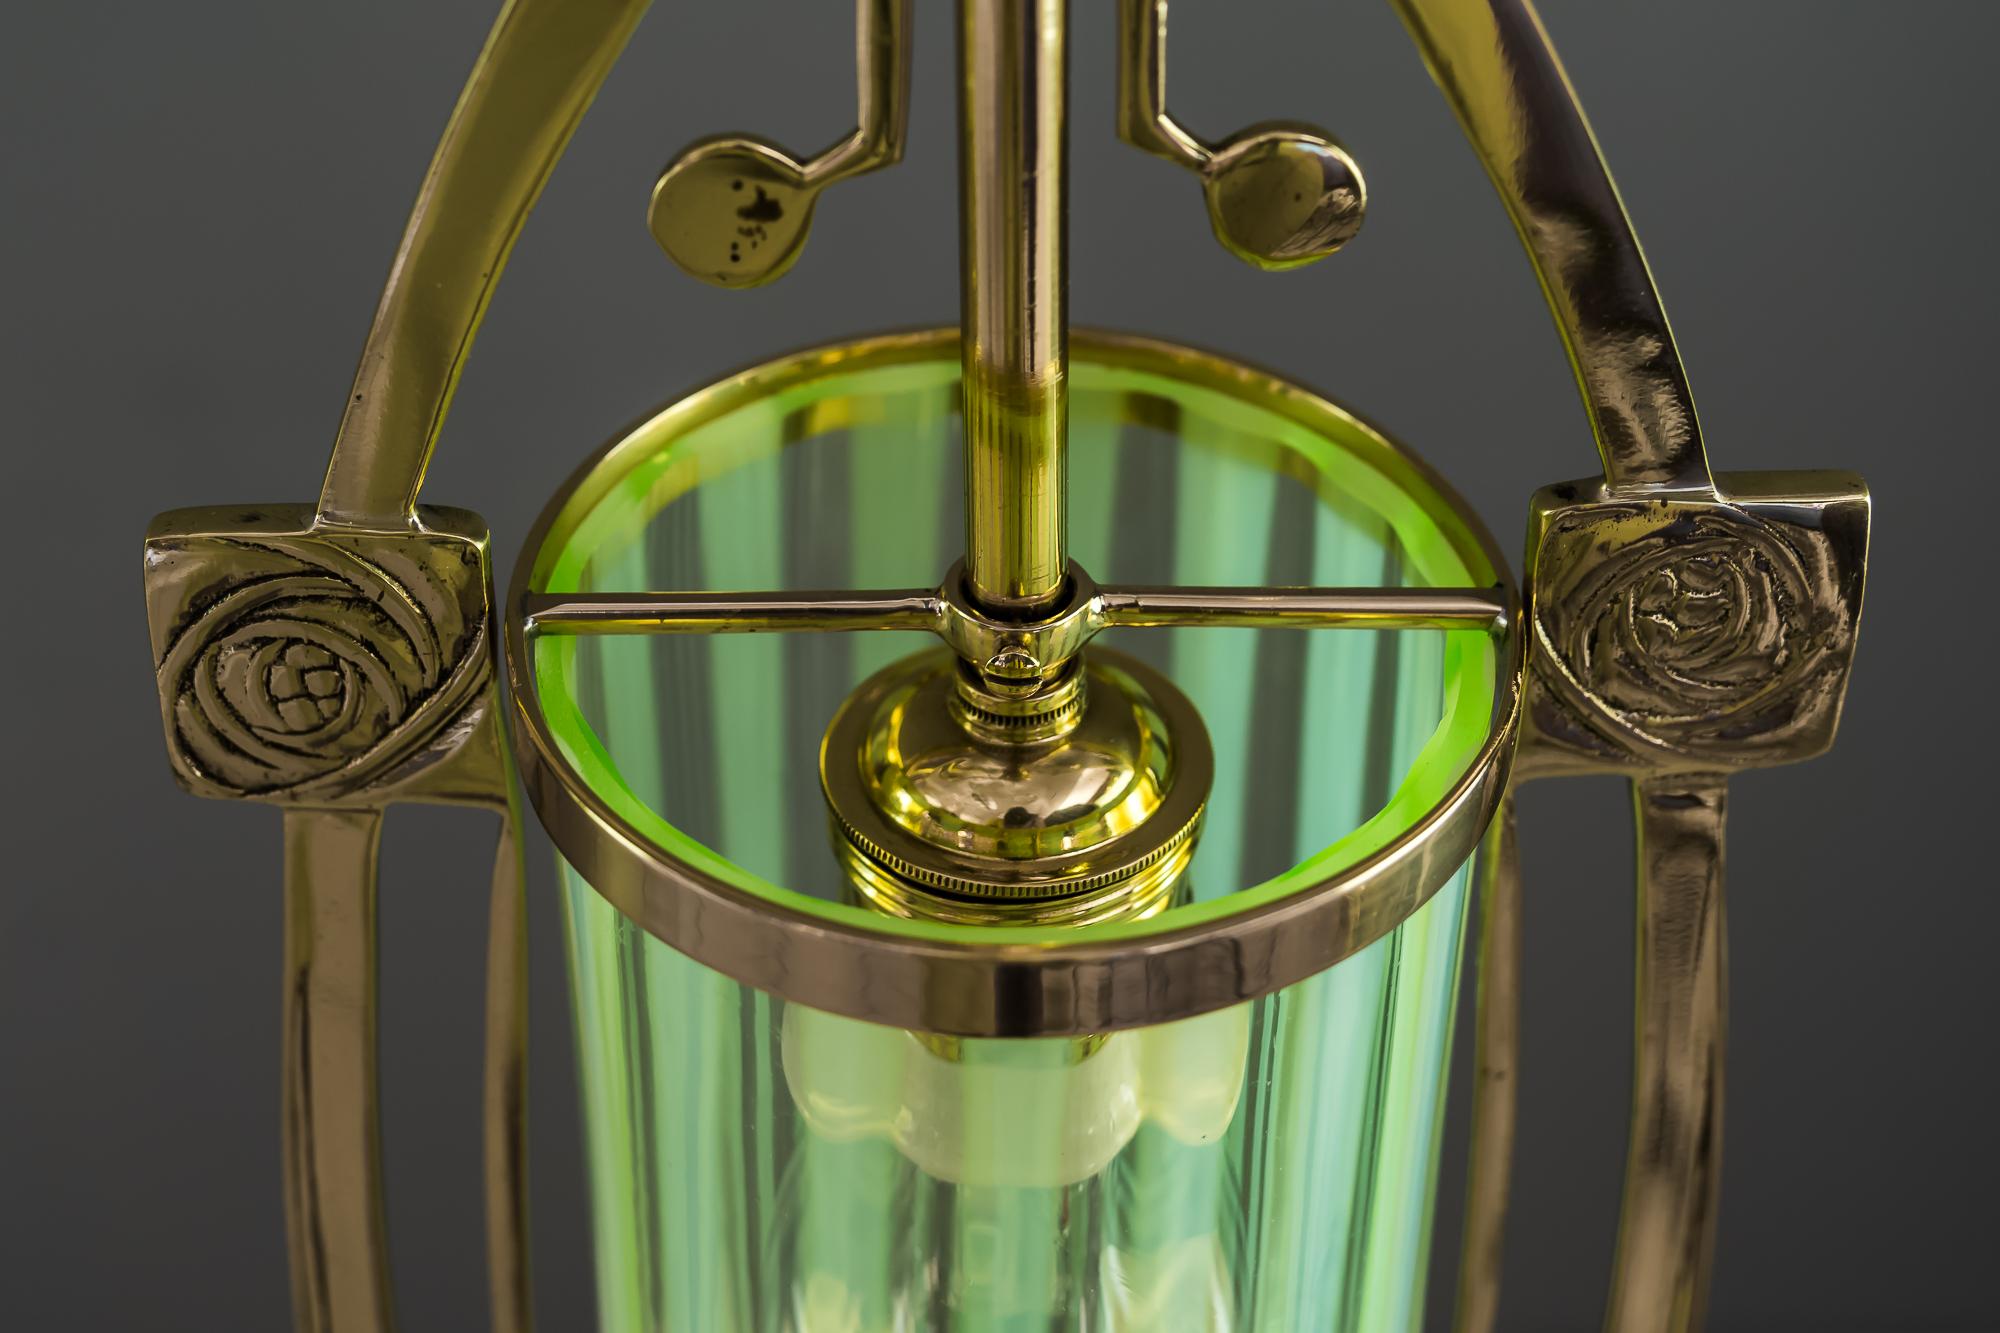 3x Jugendstil Pendant with Original Opaline Glass Shades, Vienna, Around 1910s 5